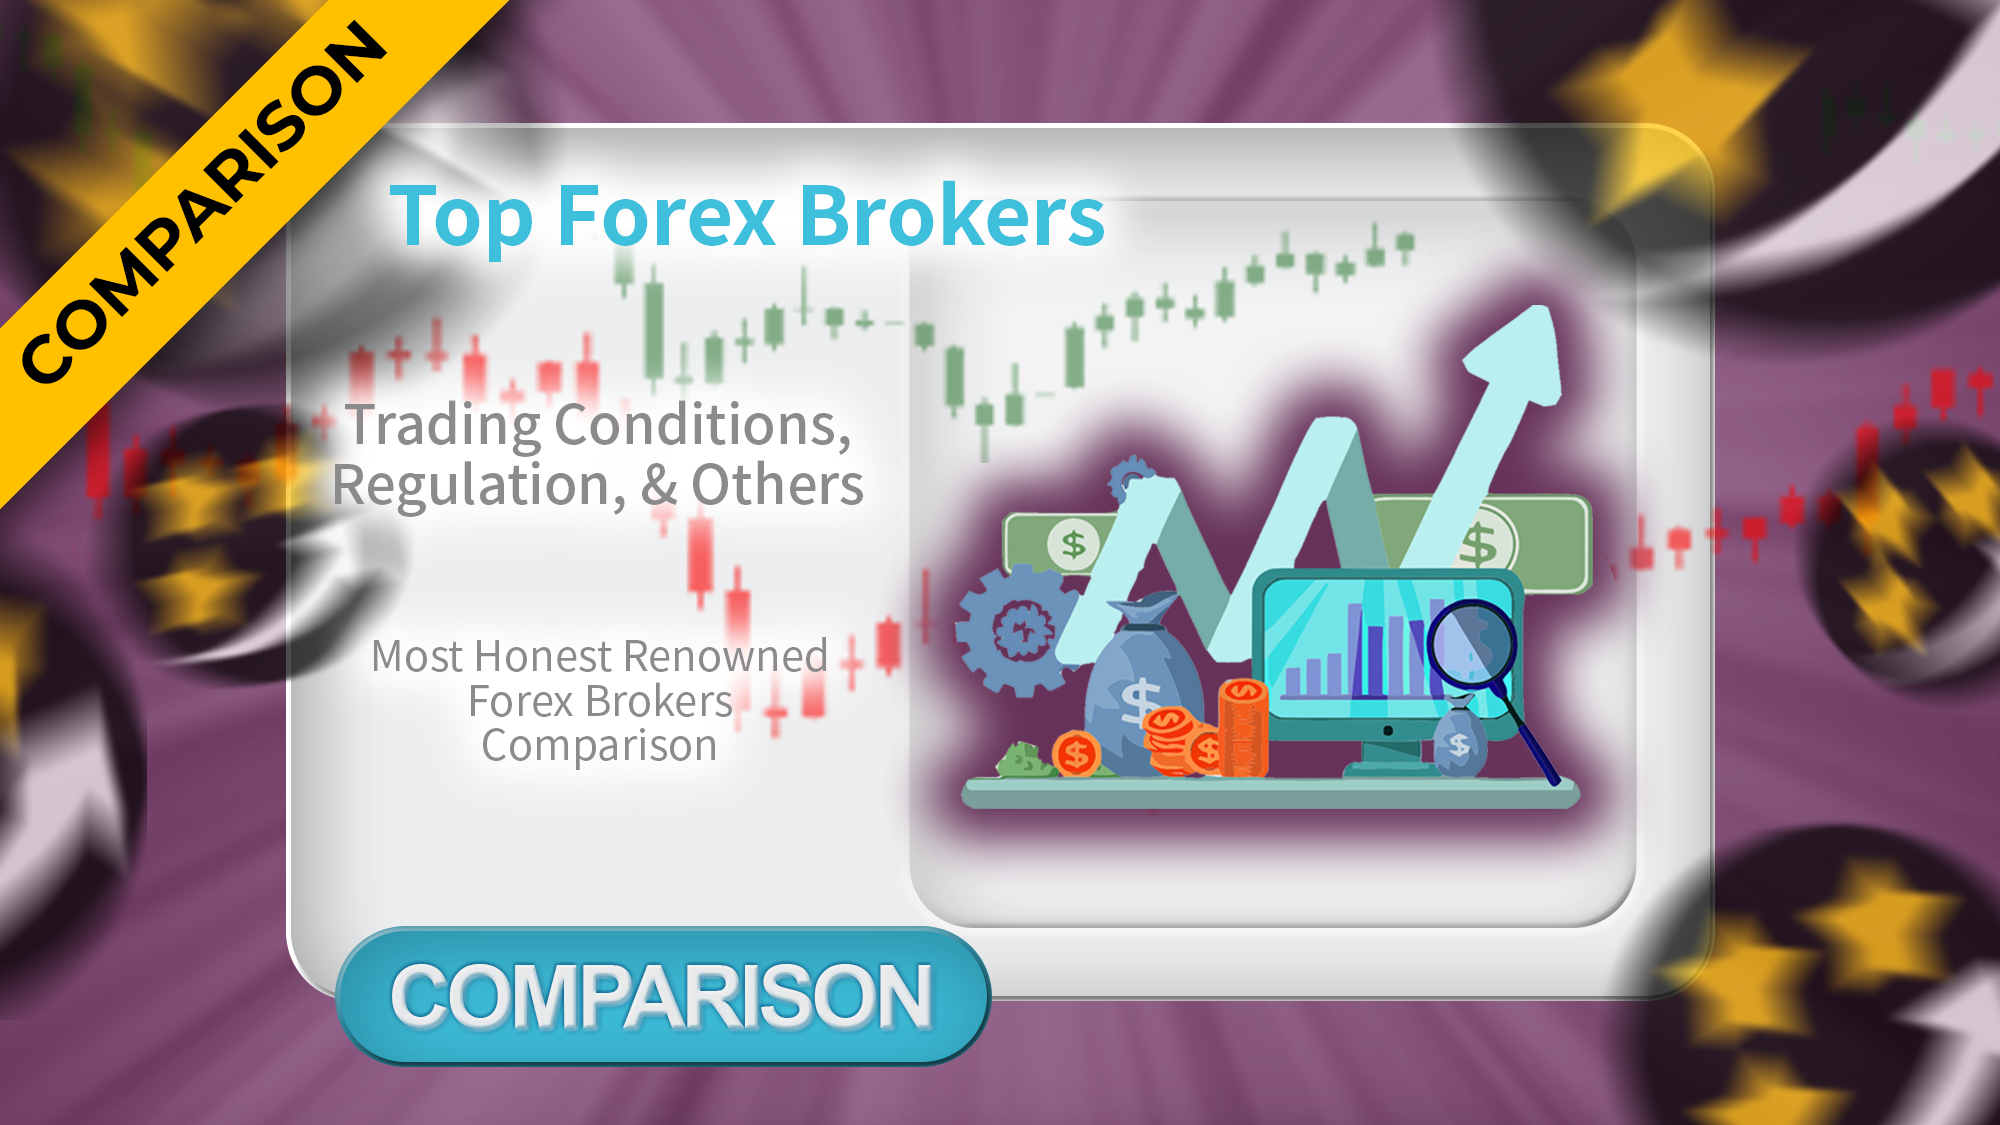 Top Forex Brokers